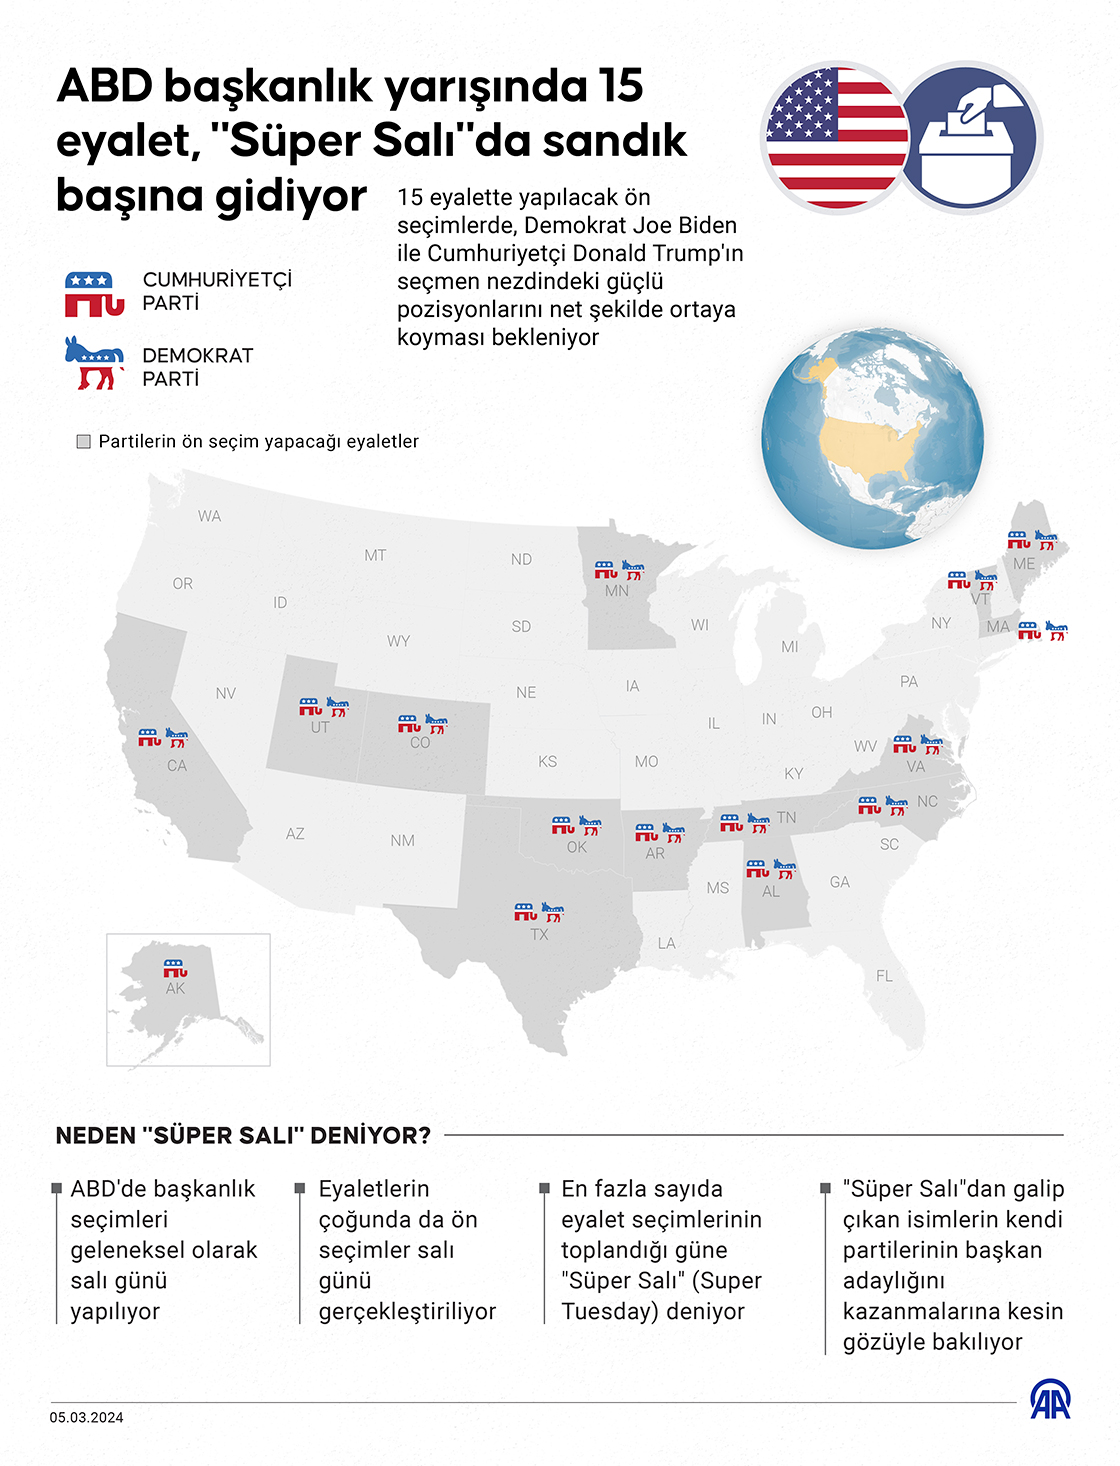 ABD başkanlık yarışında 15 eyalet "Süper Salı"da sandık başına gidiyor